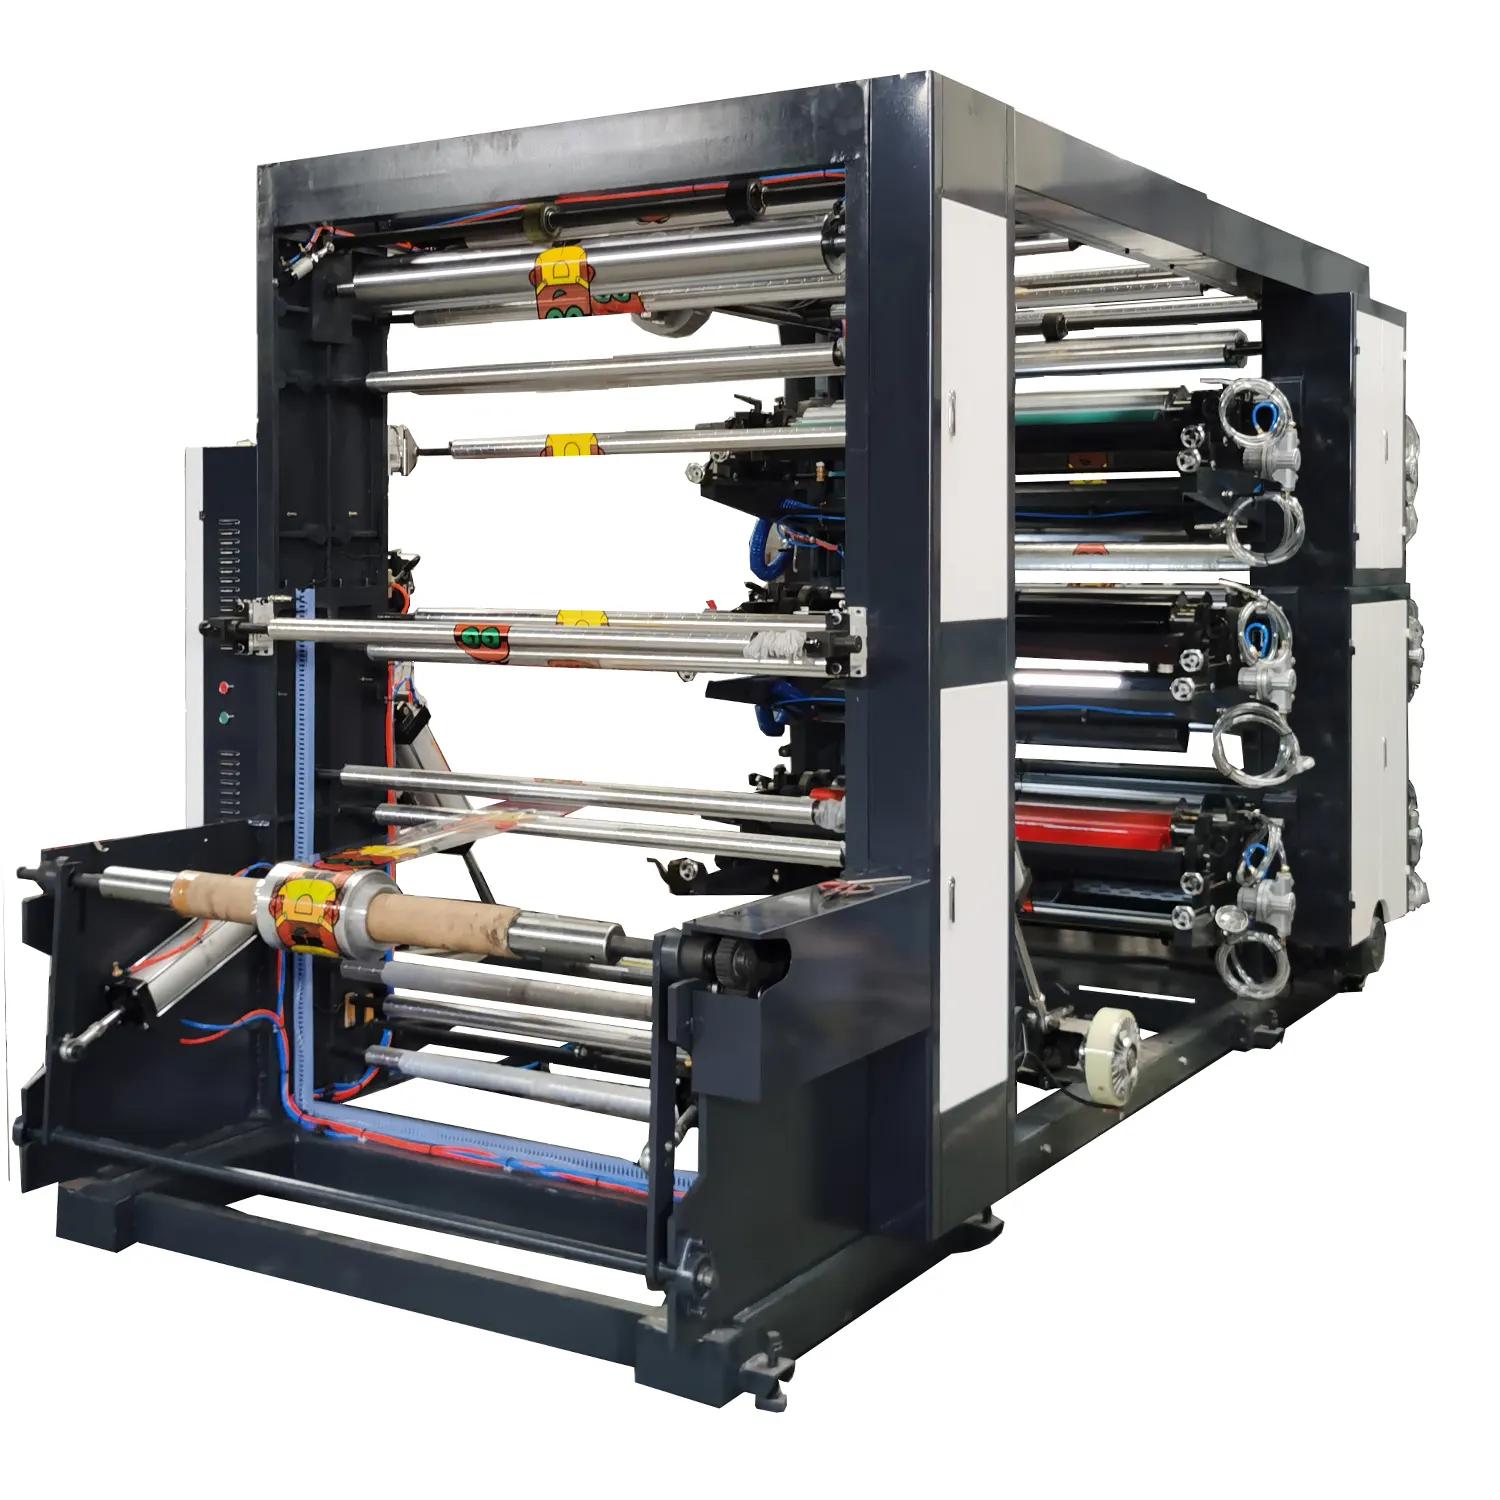 YT-41000 modelo 2 4 6 cores impressoras flexograficas, saco de plástico, impressoras flexíveis, maquinaria de impressão